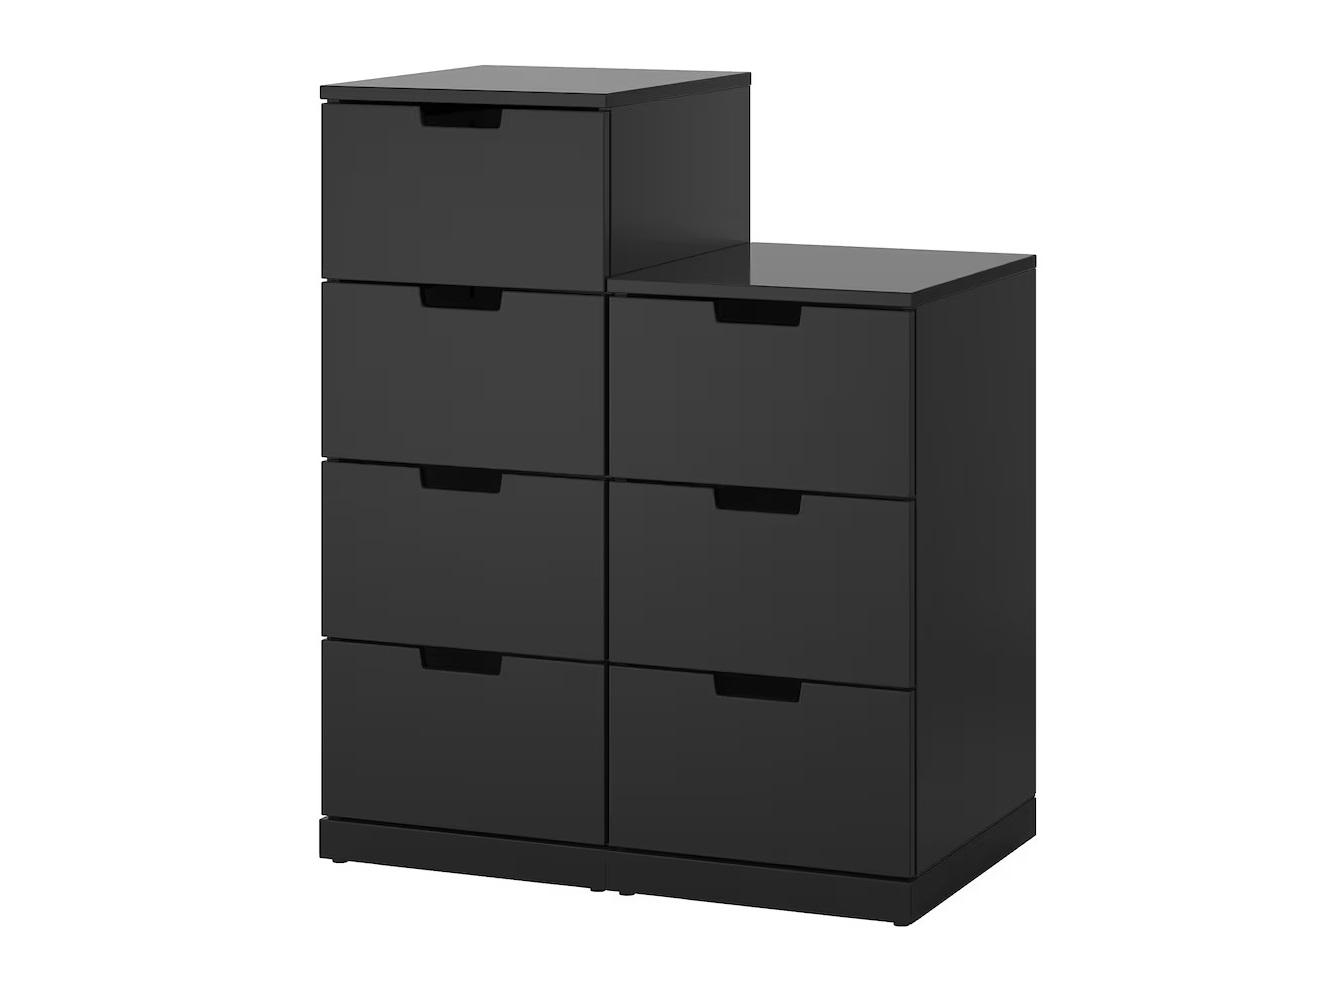 Комод Нордли 41 black ИКЕА (IKEA) изображение товара